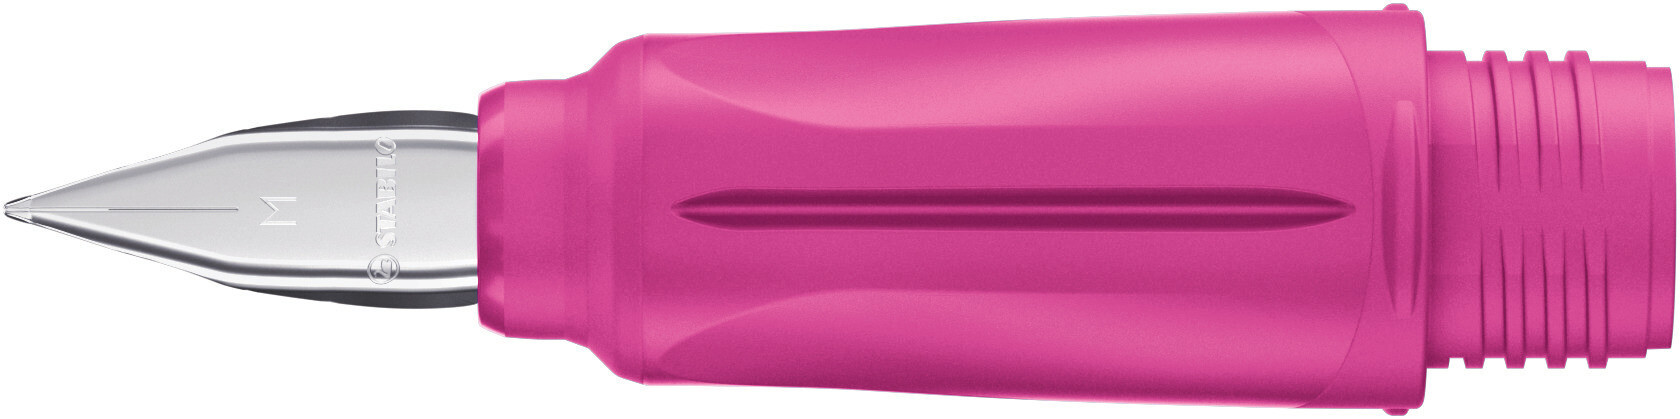 Schulfüller-Griffstück mit Anfänger-Feder M - STABILO EASYbuddy FRESH EDITION in pink